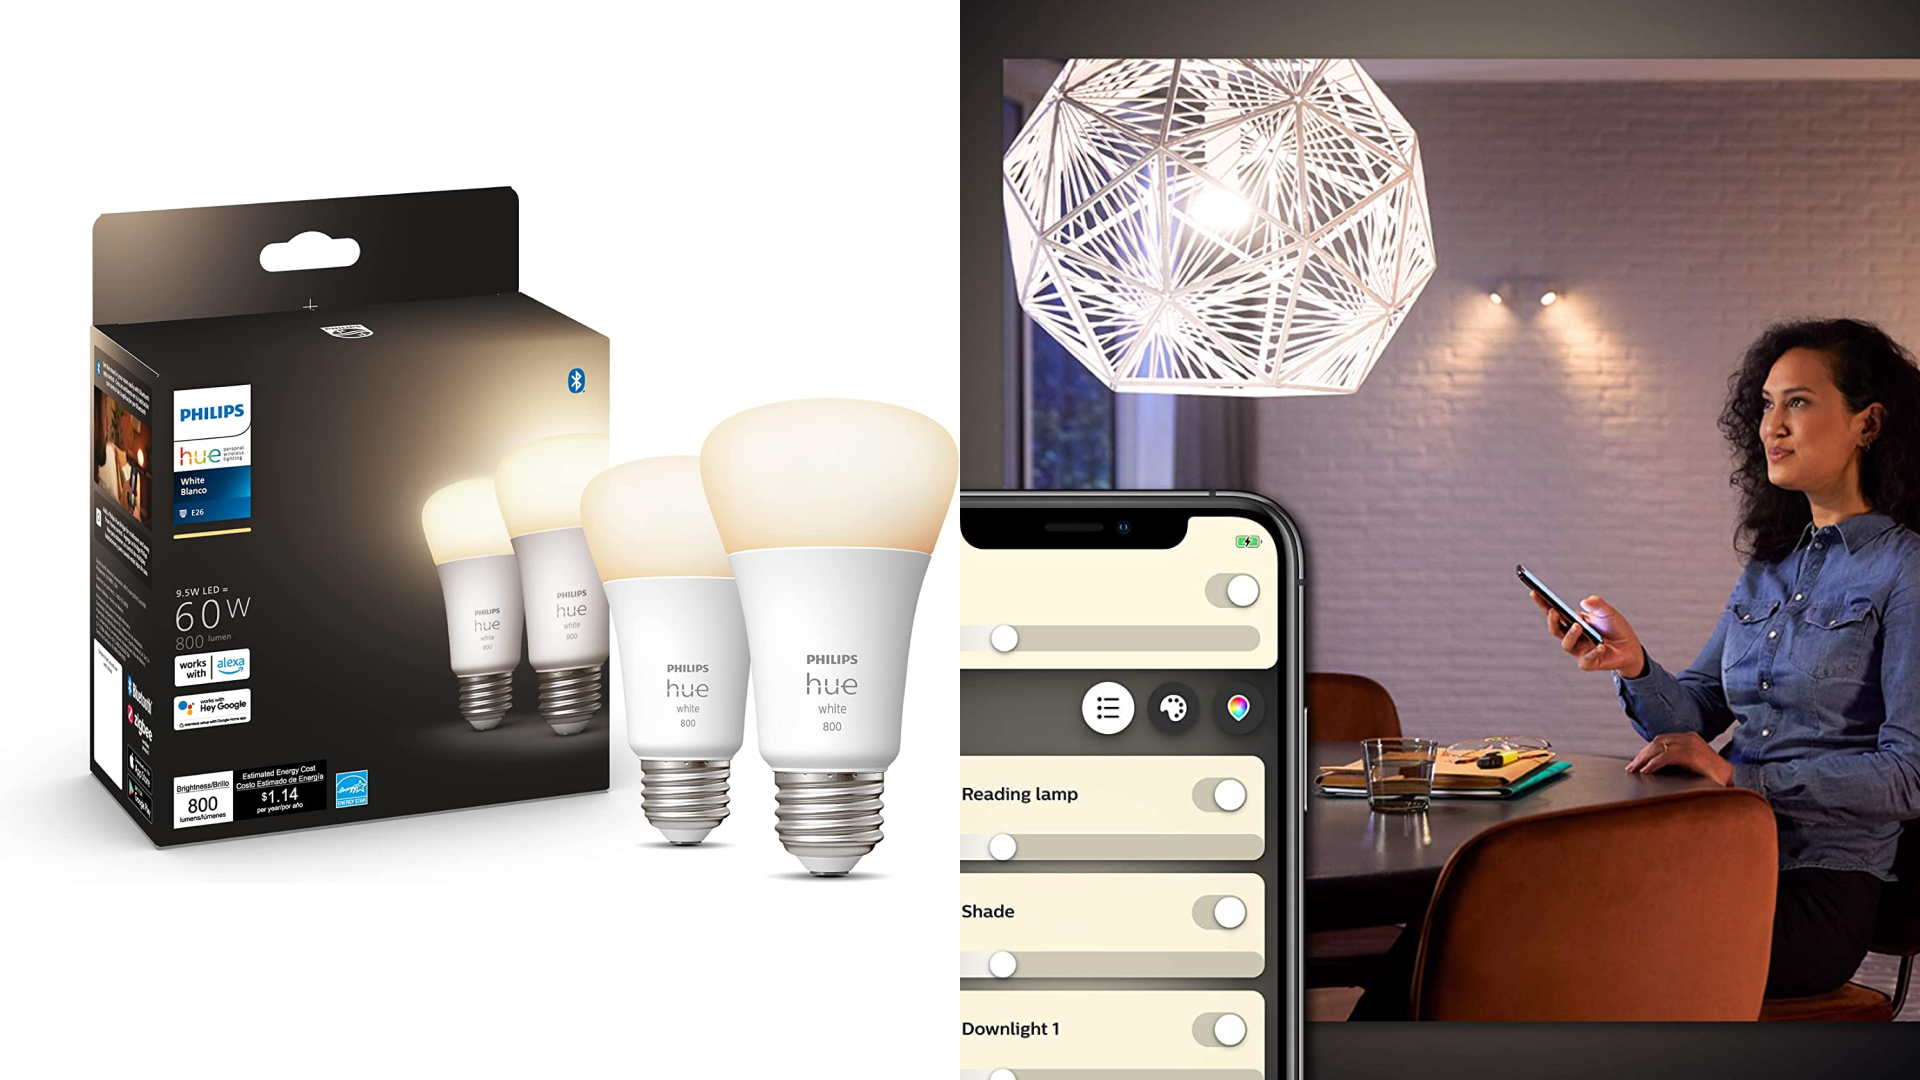 Starter Kit: Energy-efficient Smart light